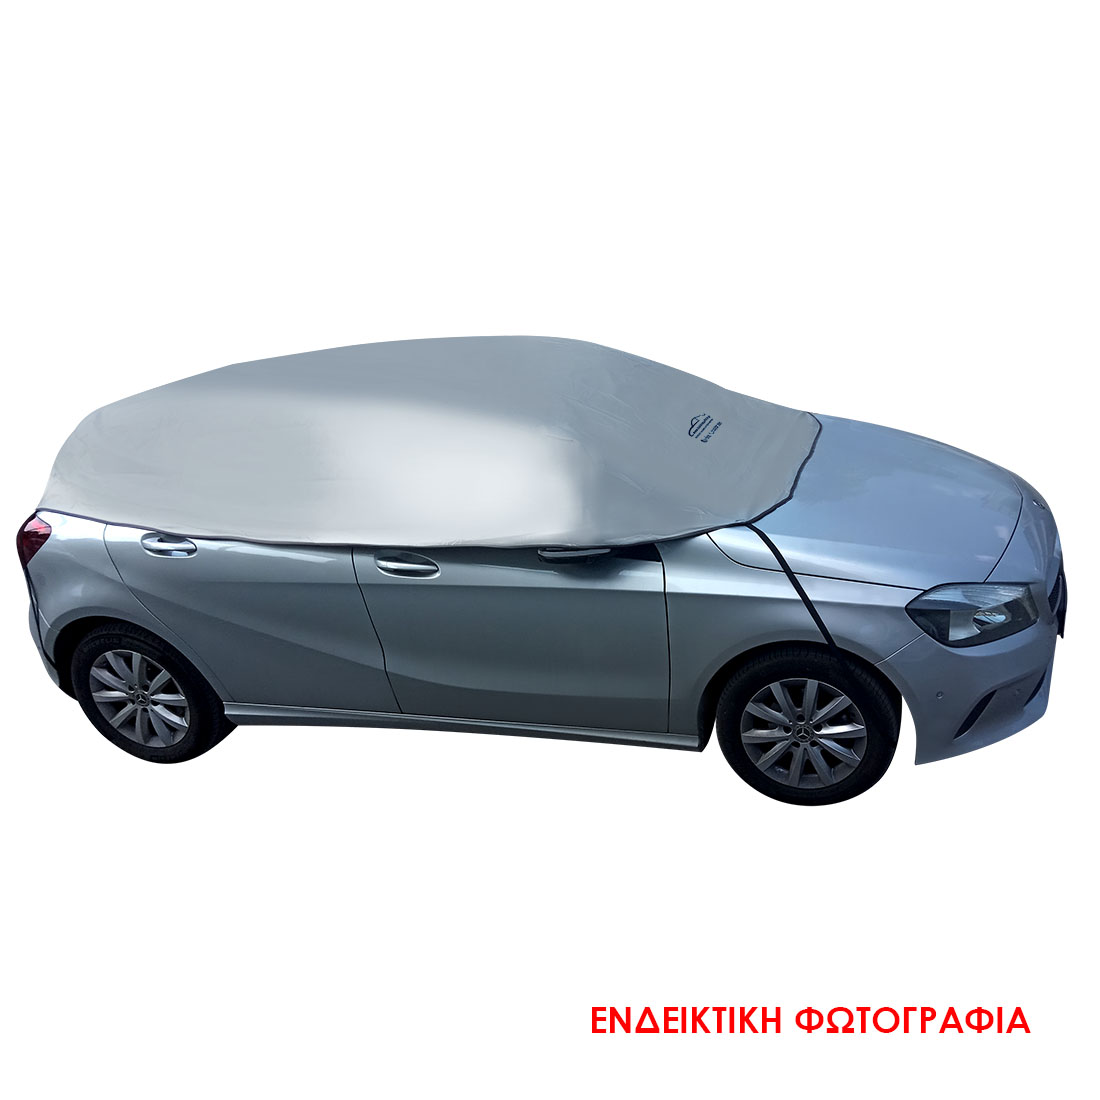 Ημικουκούλα αυτοκινήτου Sedan αδιάβροχη (SD1) (2.55x1.40x0.55cm)